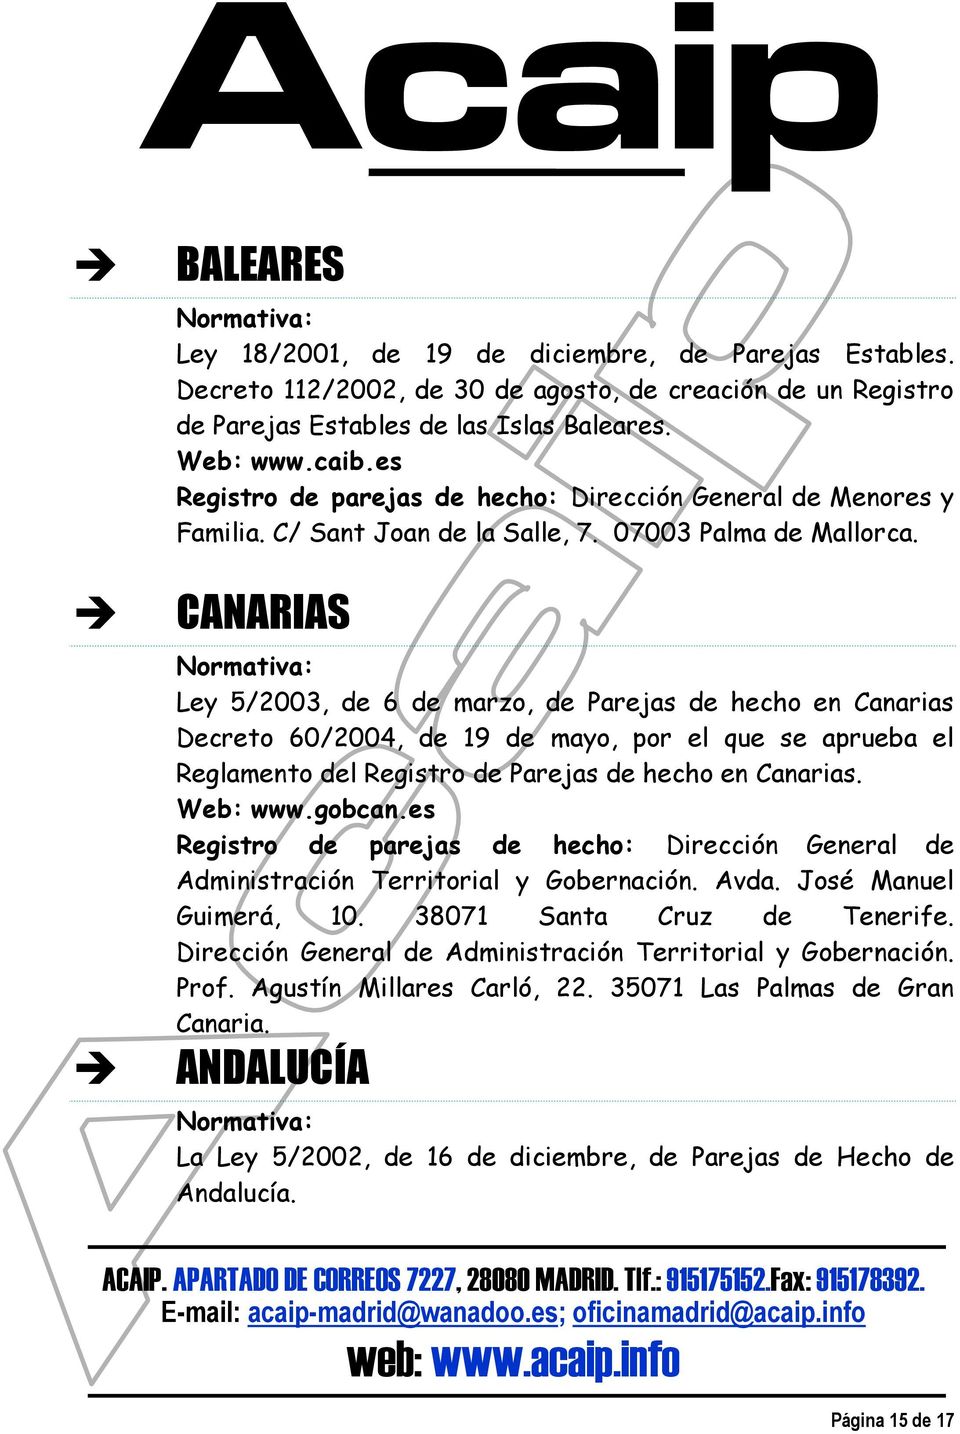 CANARIAS Ley 5/2003, de 6 de marzo, de Parejas de hecho en Canarias Decreto 60/2004, de 19 de mayo, por el que se aprueba el Reglamento del Registro de Parejas de hecho en Canarias. Web: www.gobcan.